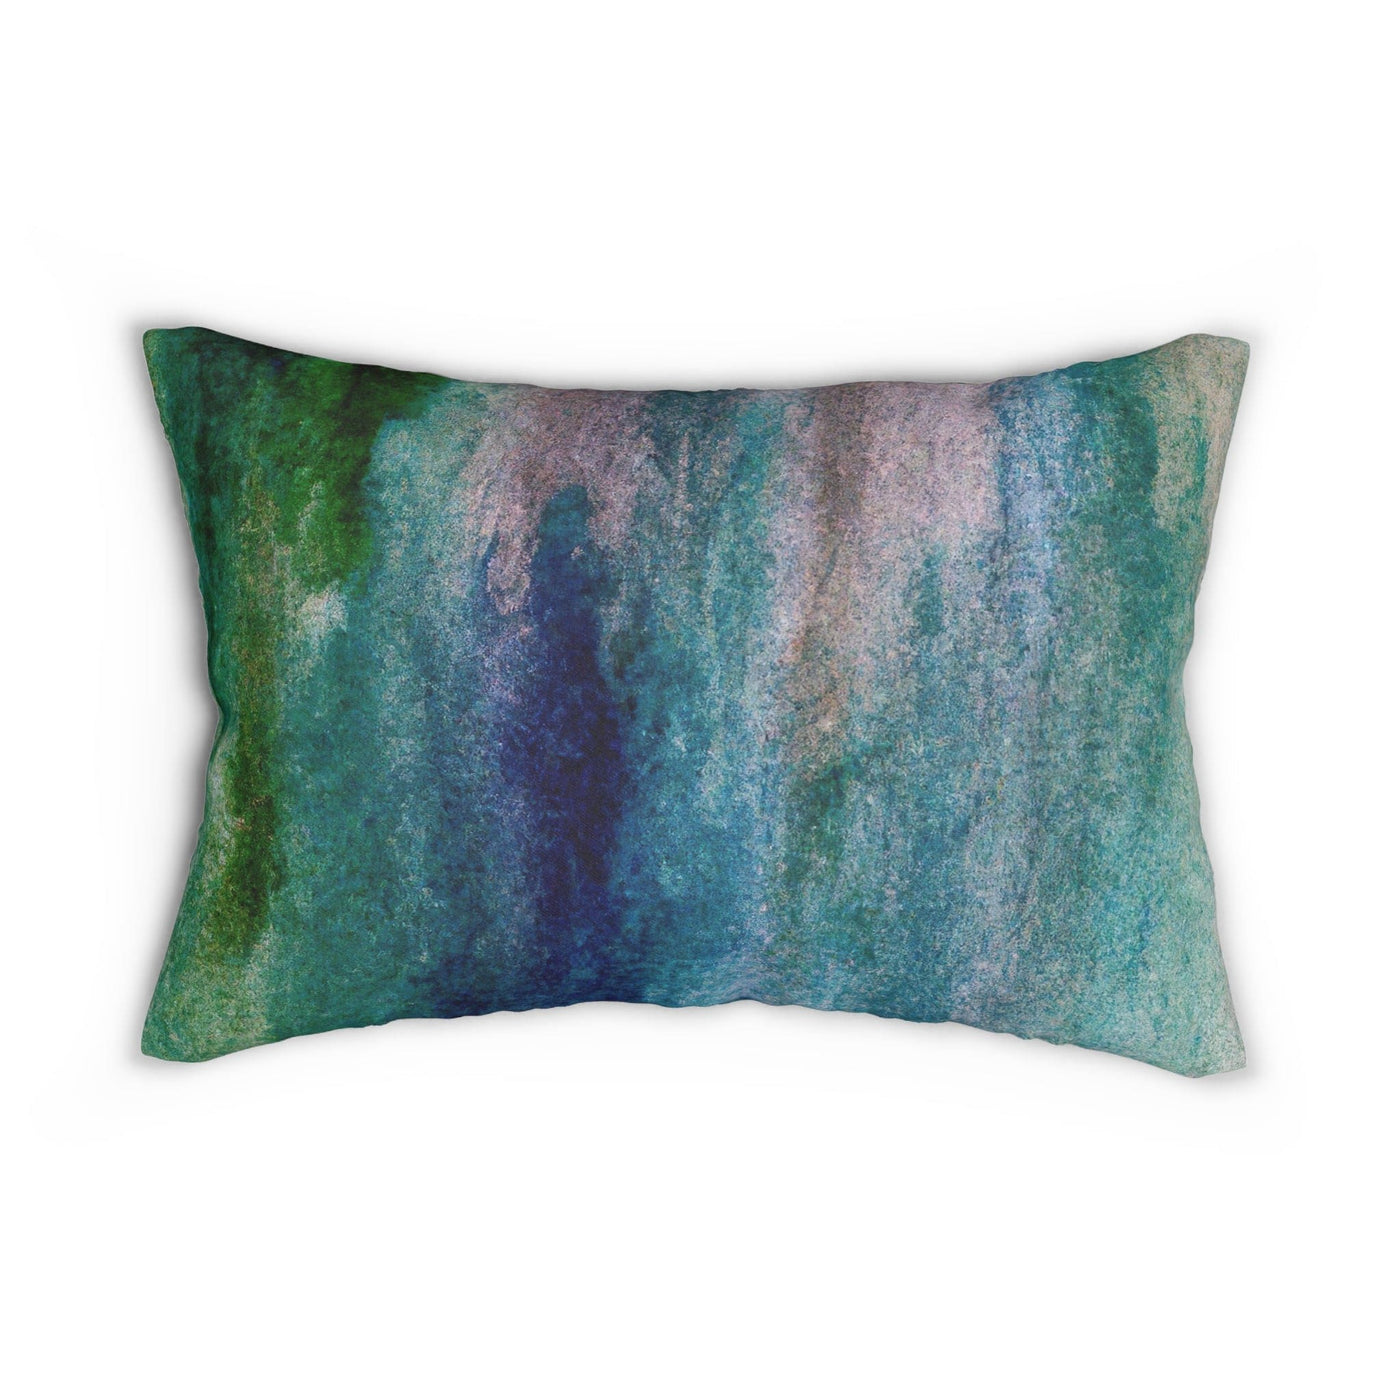 Decorative Lumbar Throw Pillow - Blue Hue Watercolor Abstract Print